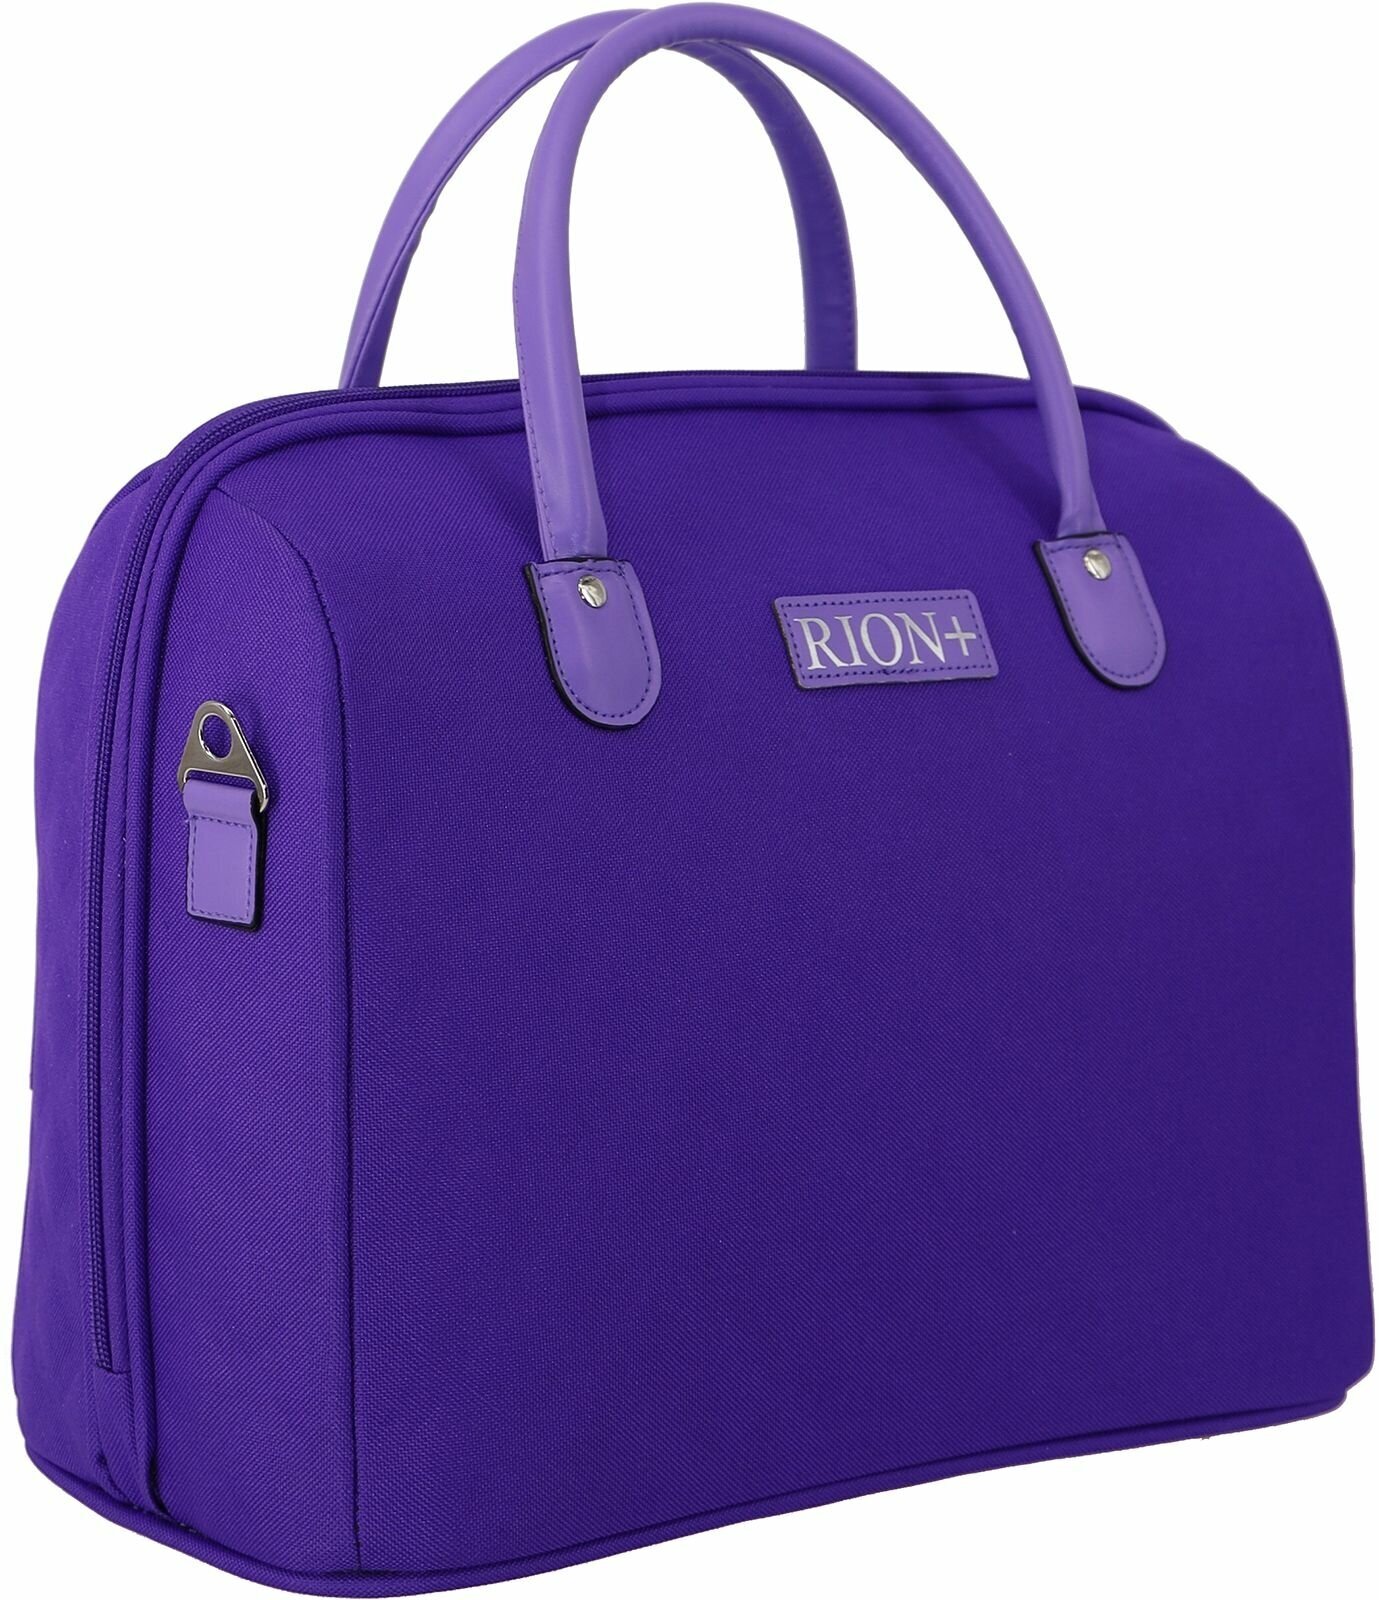 Женская дорожная сумка с ремнем на ручку чемодана Рион+ (RION+) / ручная кладь / саквояж для города, R236, Тканевая, 20 литров, сиреневый - фотография № 7